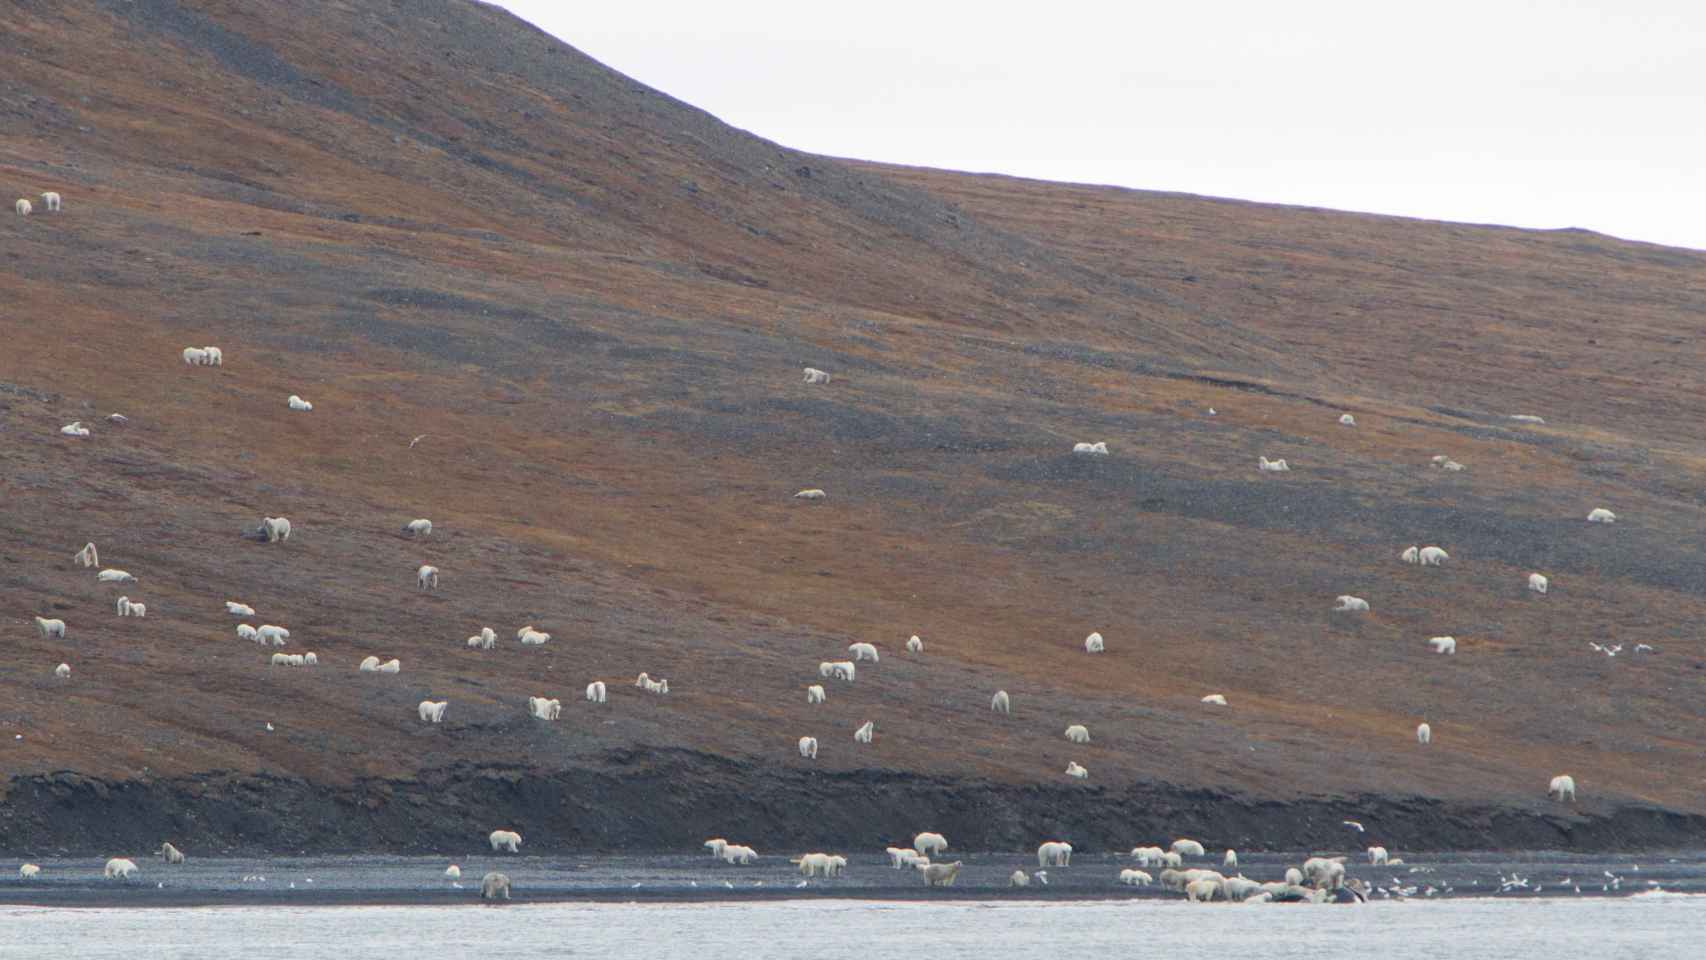 Las laderas de la isla de Wrangel cubiertas de osos polares.